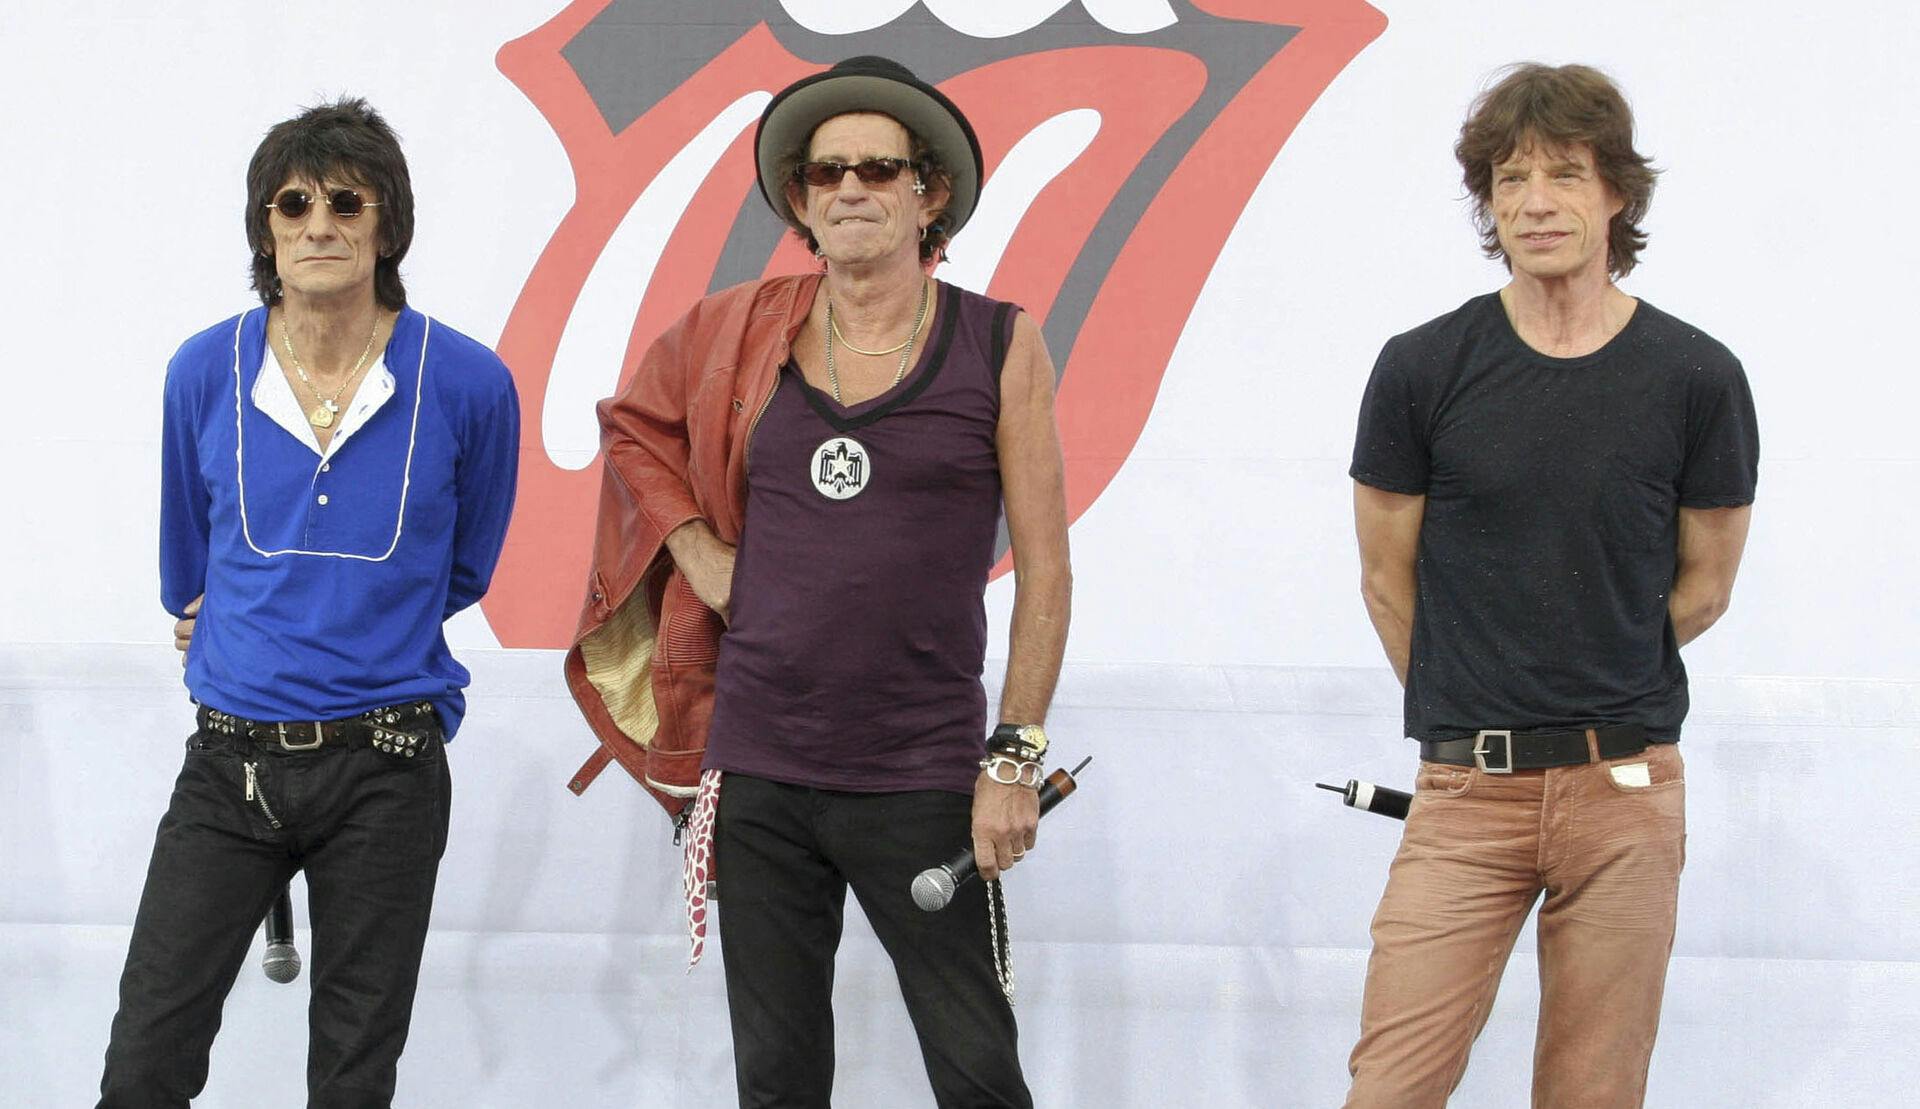 The Rolling Stones indleder søndag aften deres USA-turné. Det er første turné i USA, siden bandet mistede trommeslageren Charlie Watts i 2021.